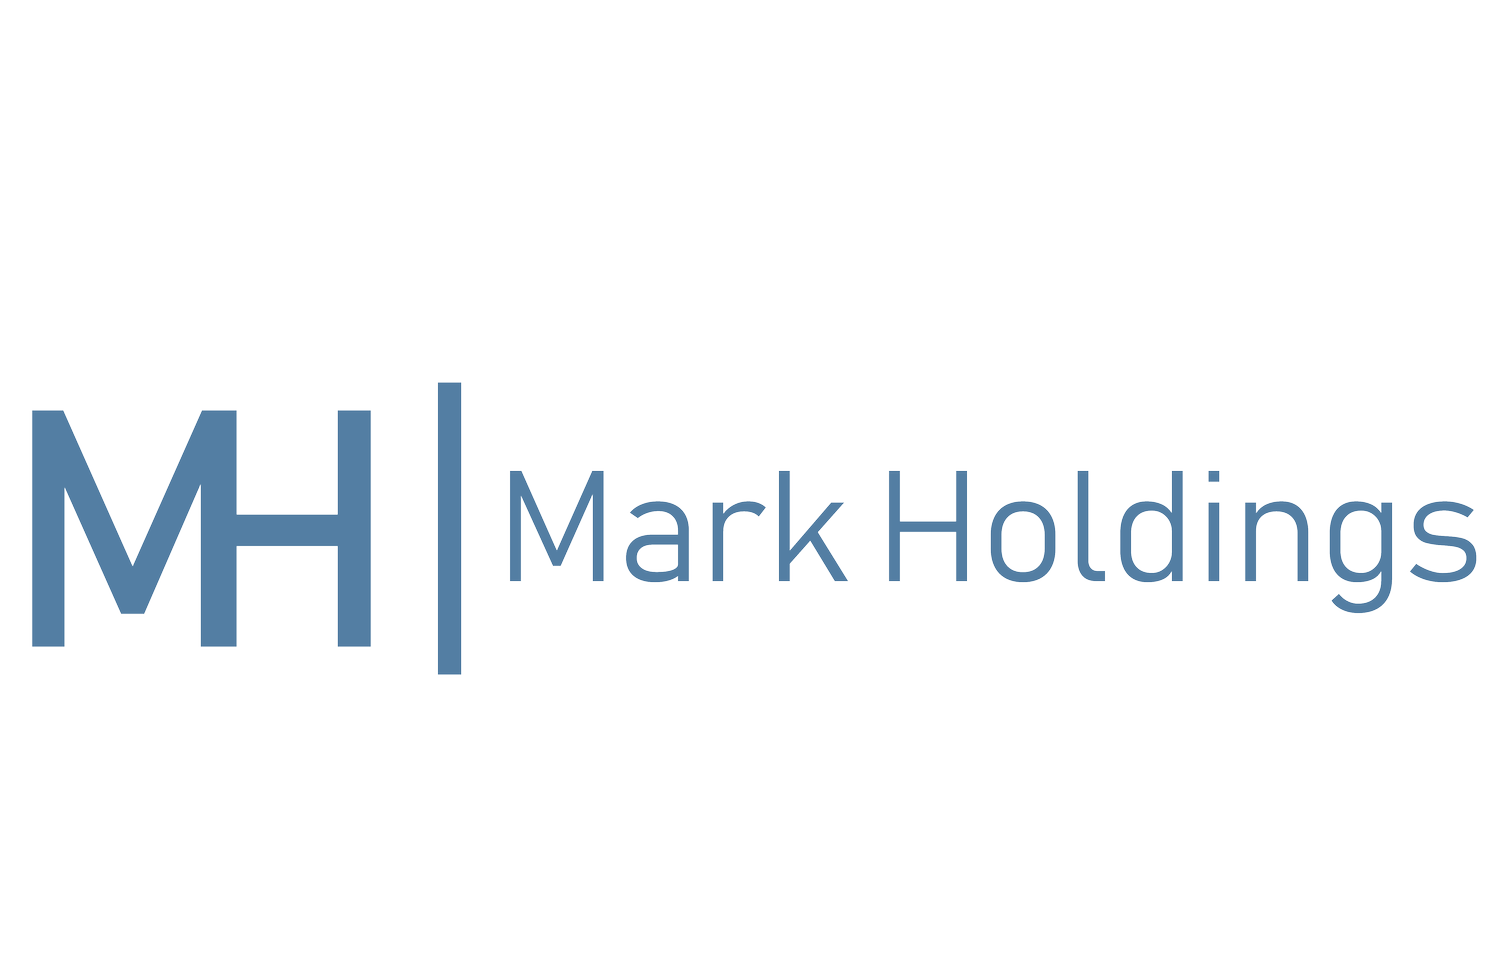 Mark Holdings